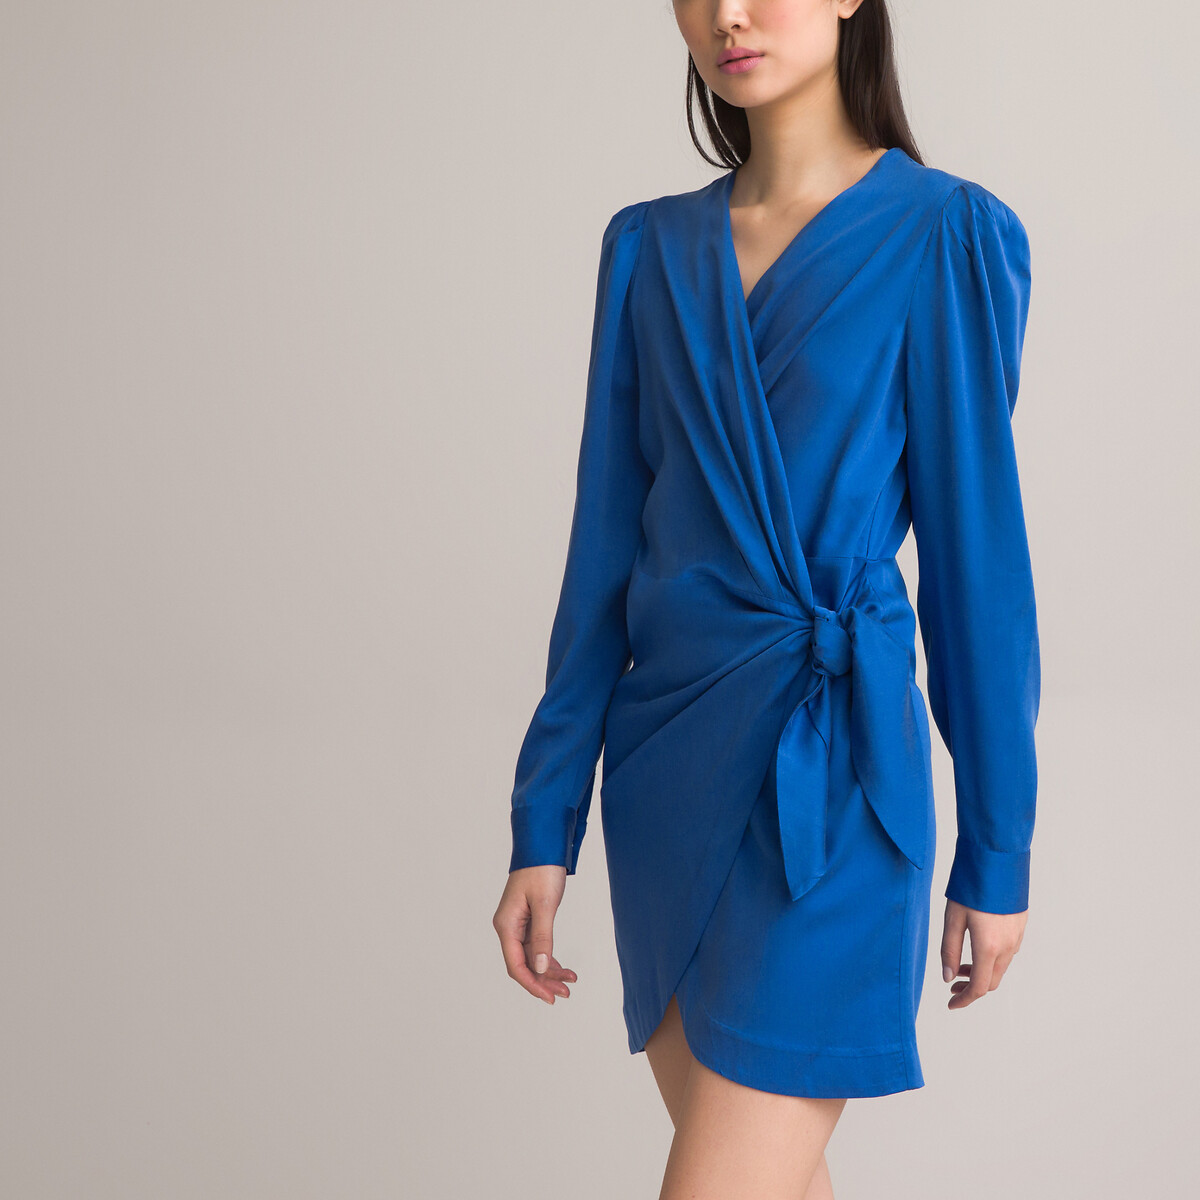 Платье короткое с запахом длинные рукава 44 синий платье короткое длинные рукава с принтом xs каштановый